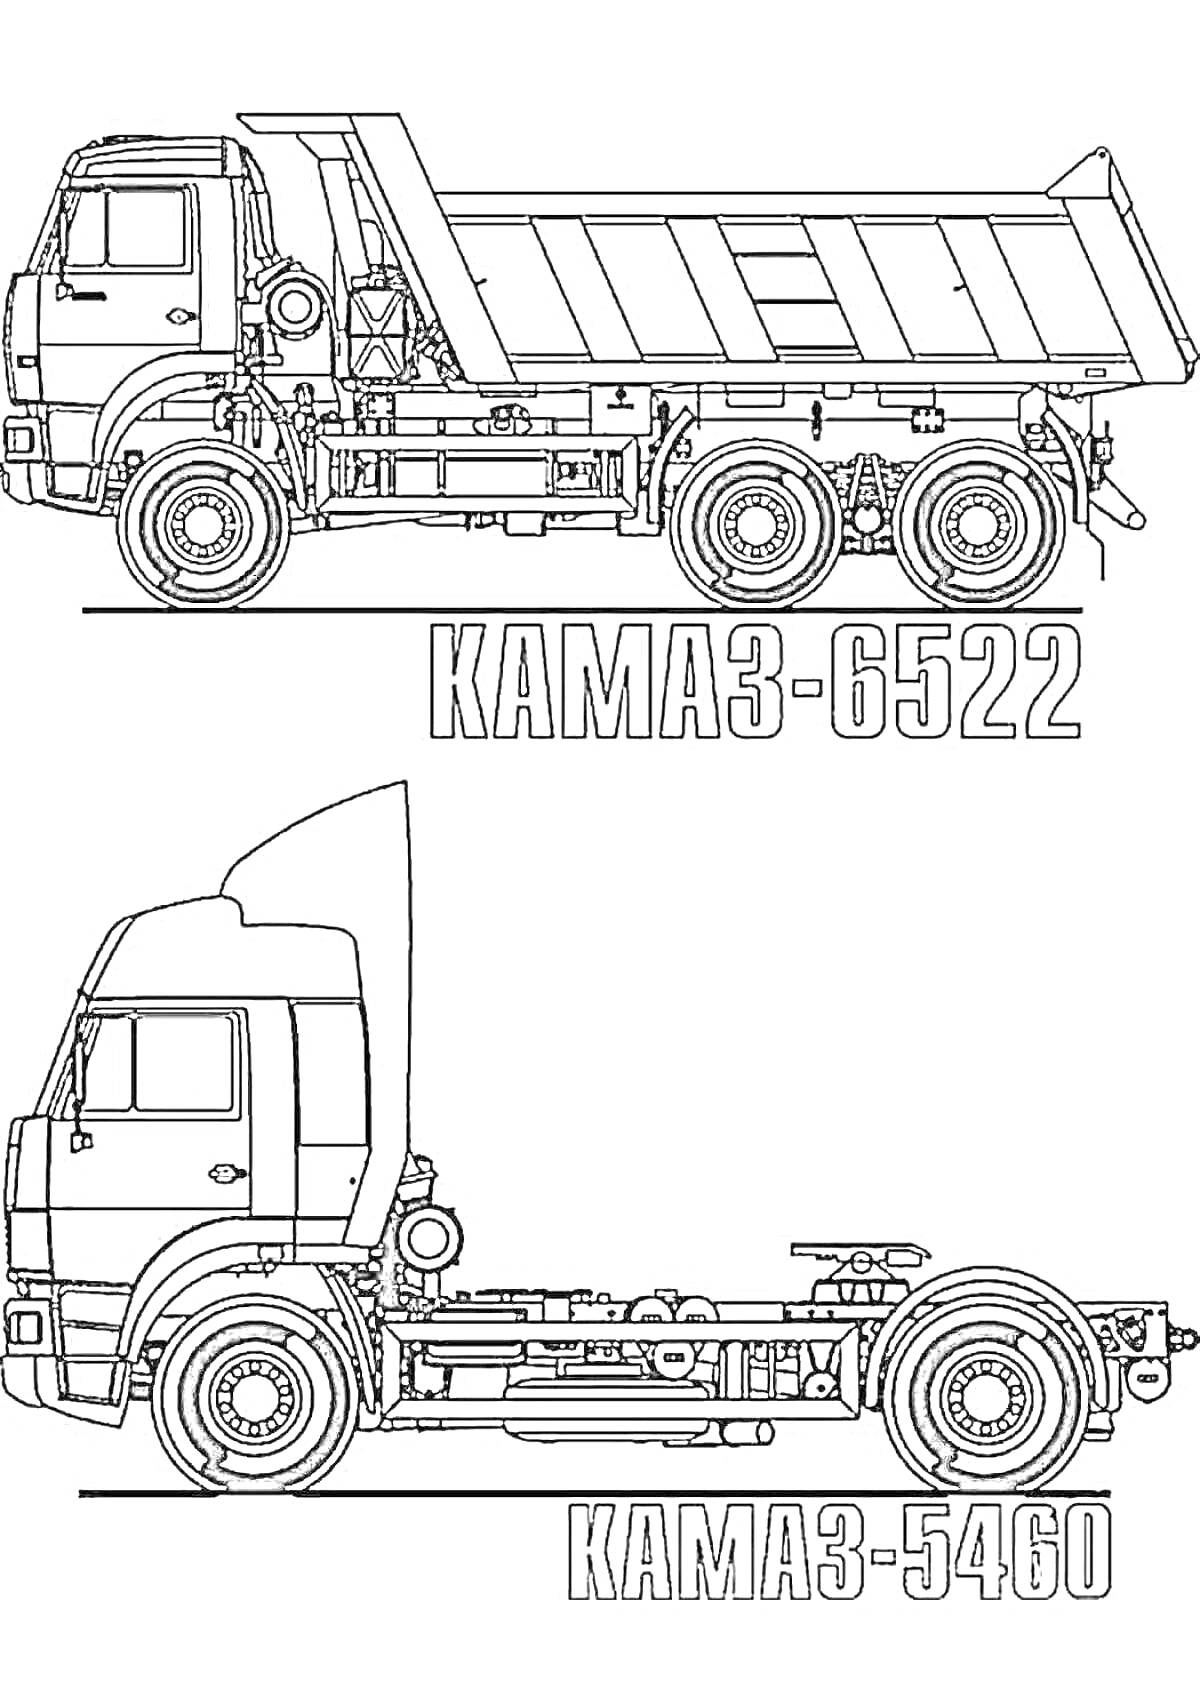 Раскраска Камаз КАМАЗ-6522 и КАМАЗ-5460 с детализацией кузова и шасси